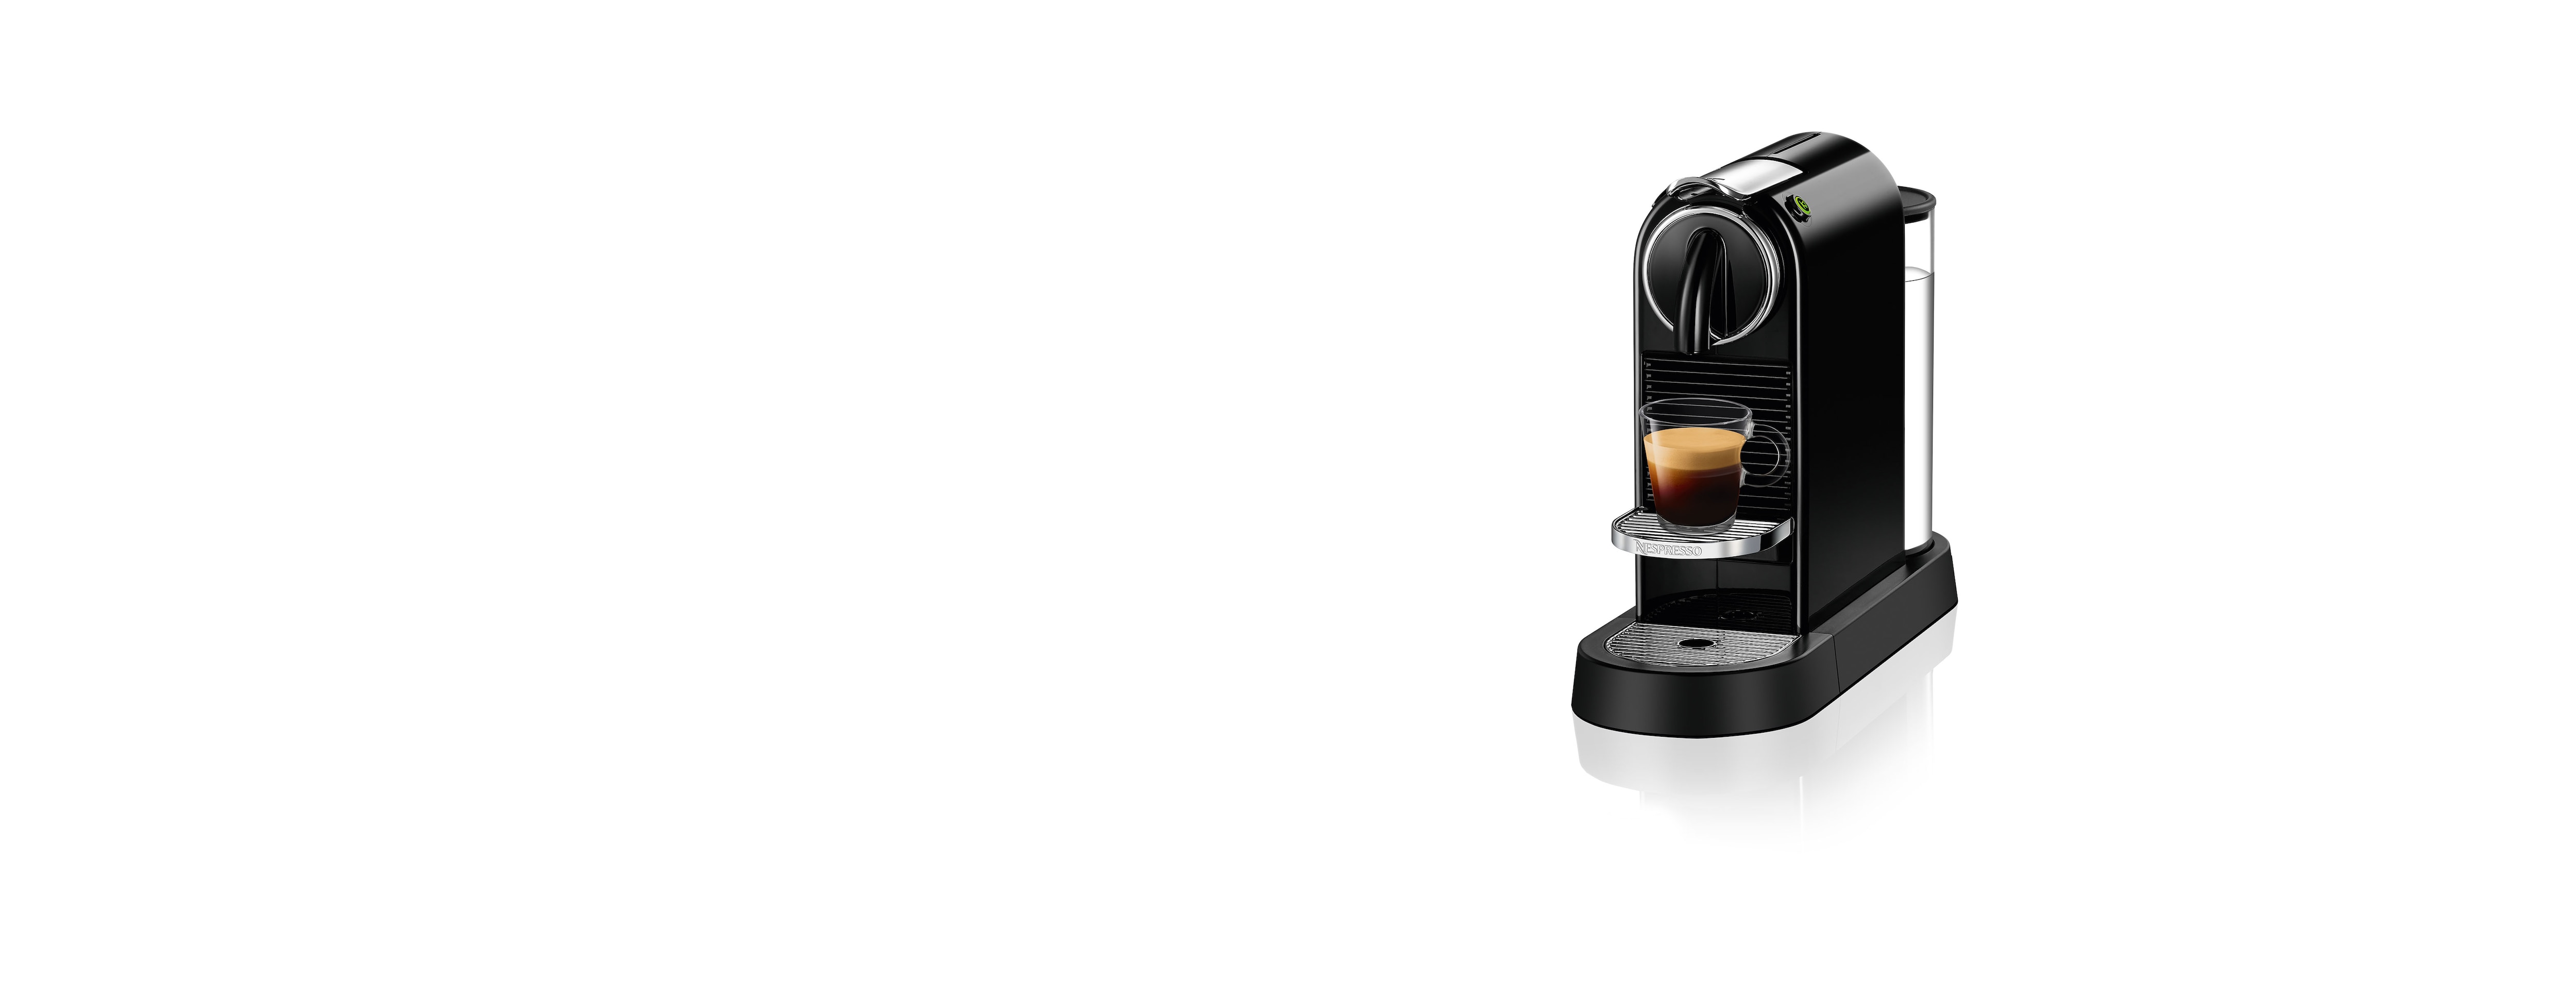 Nespresso Citiz Espresso Machine - Sam's Club